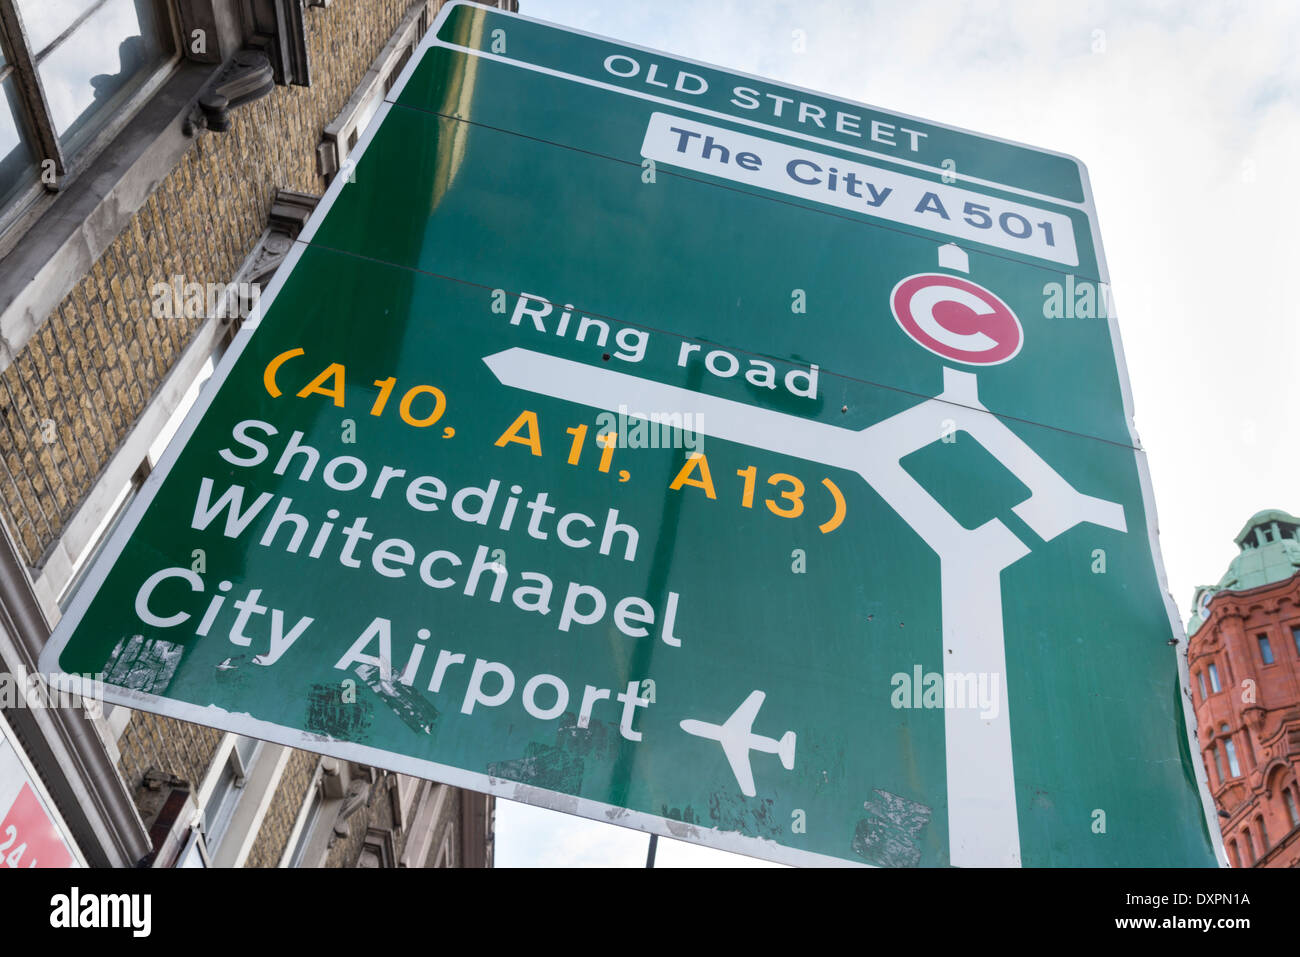 Alte Straße Kreisverkehr Straße Zeichen, London, England, UK Stockfoto